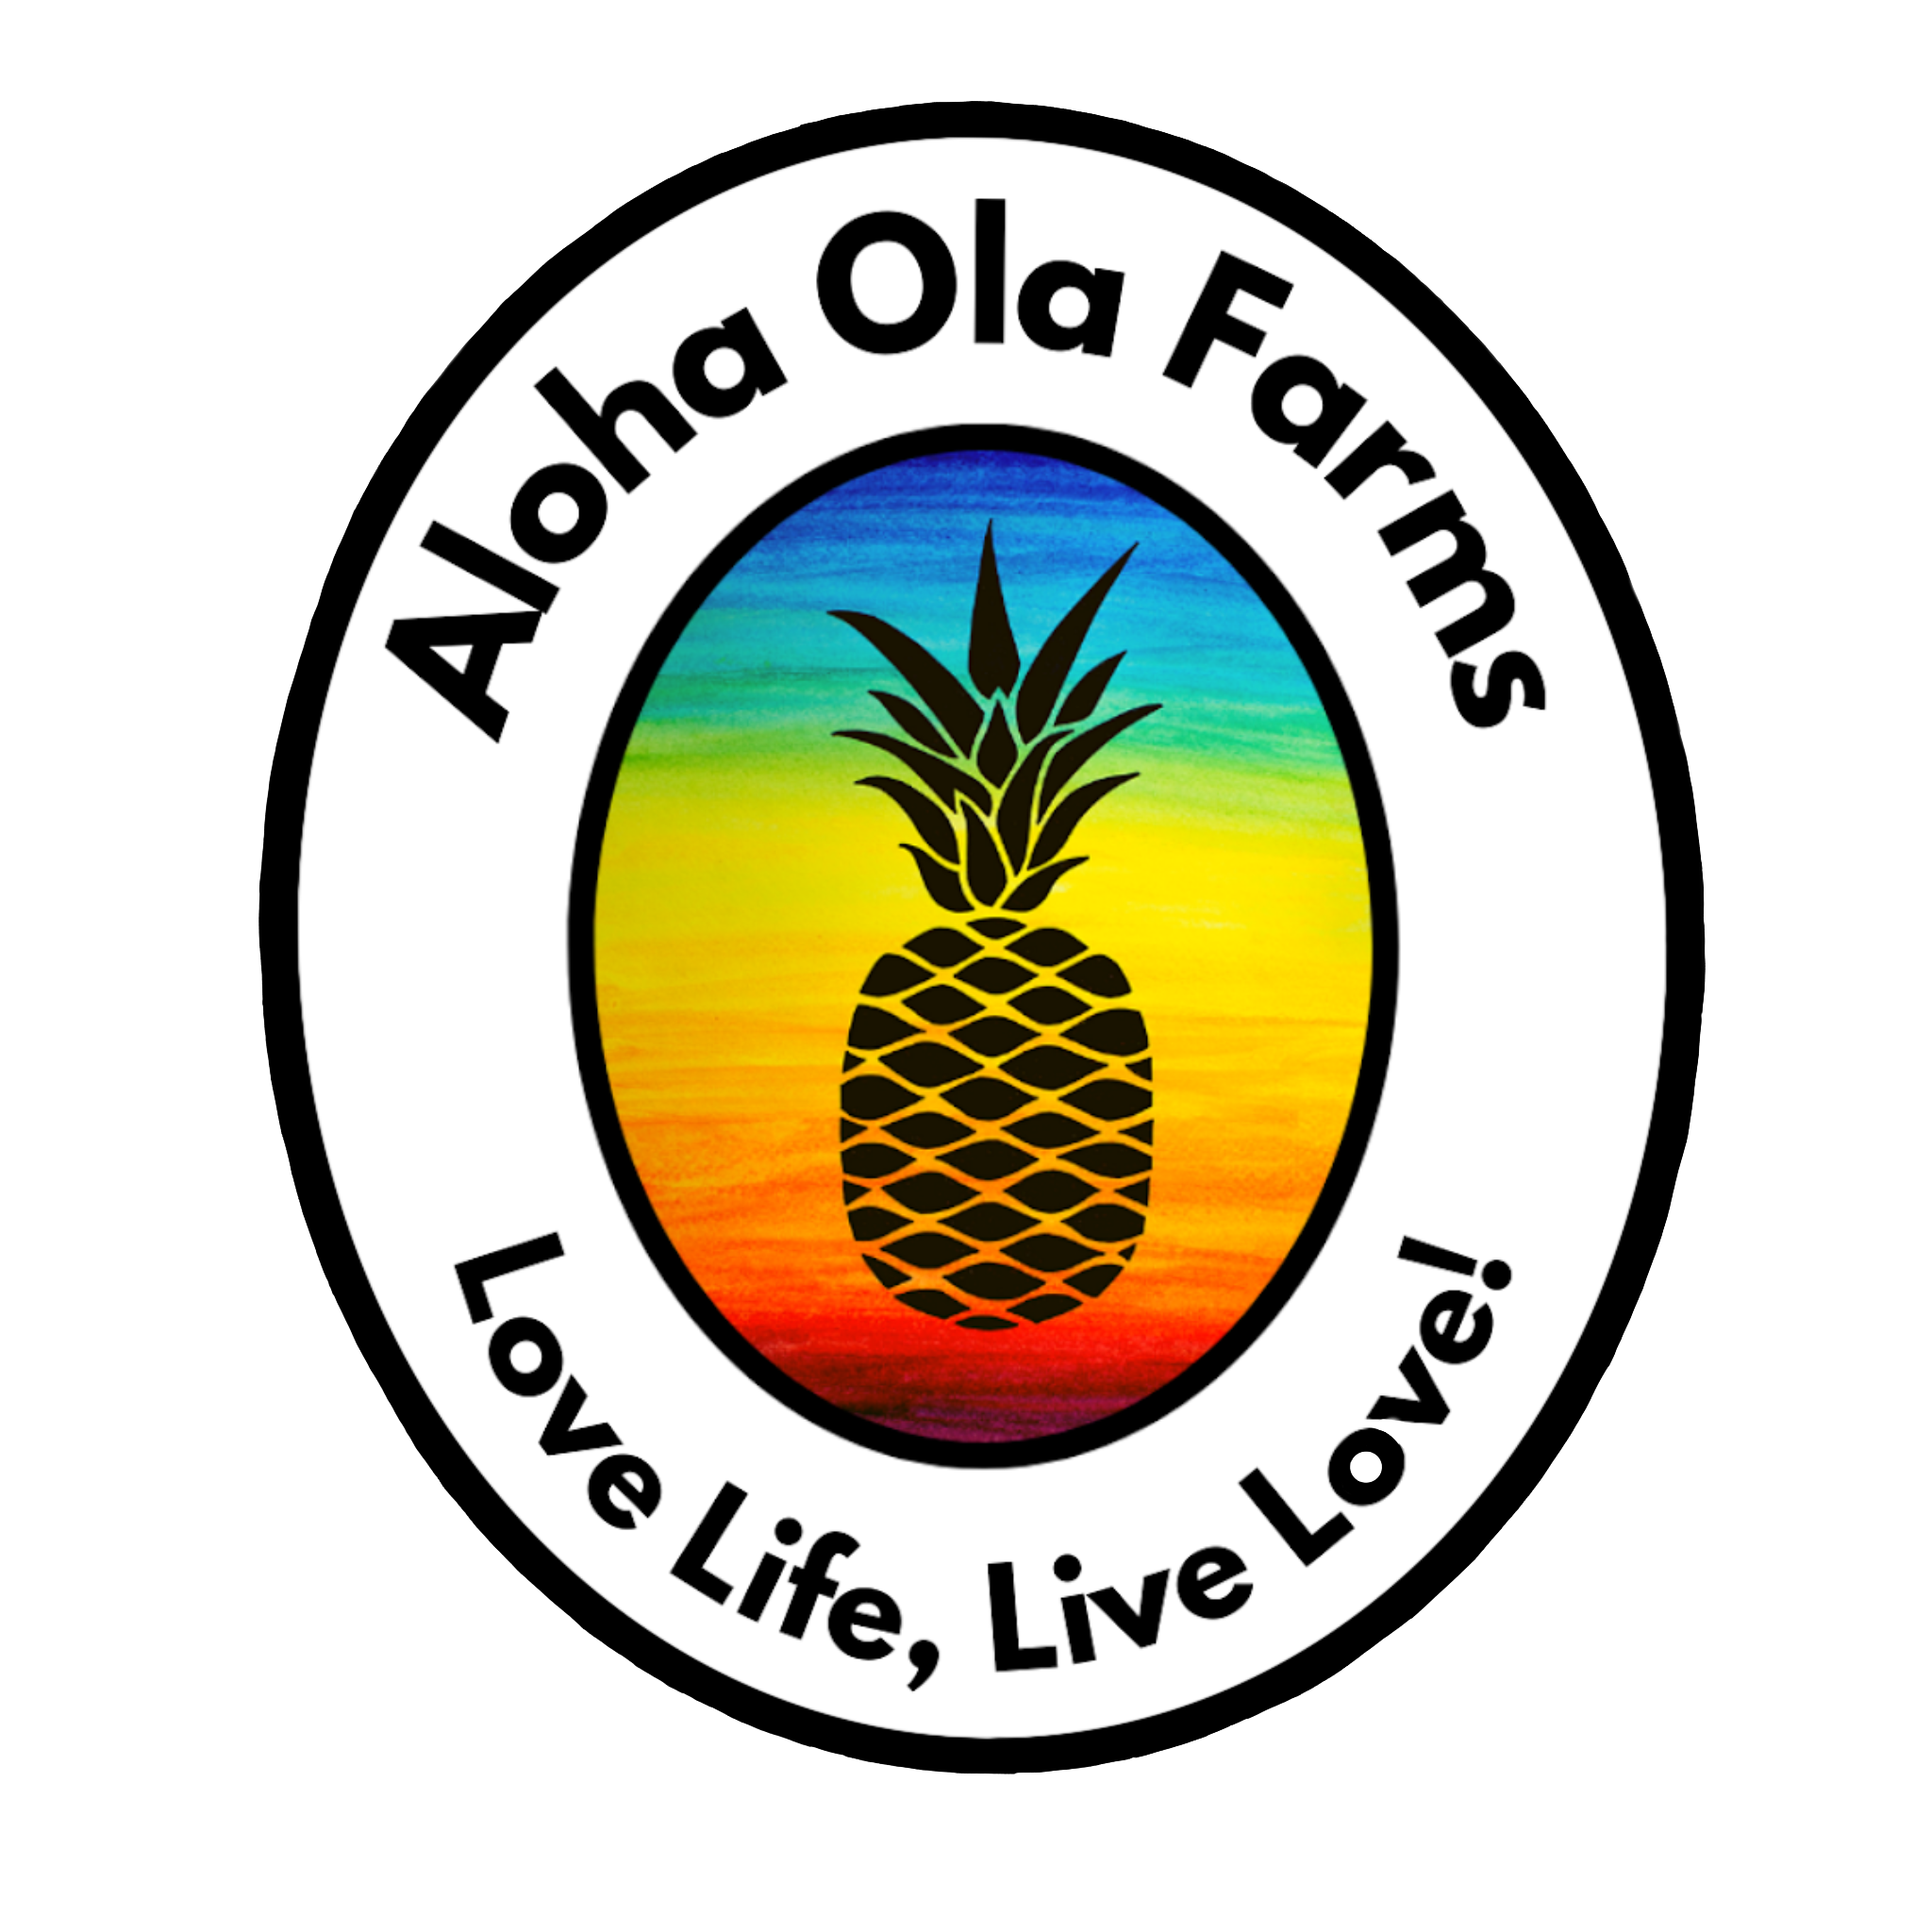 Aloha Ola Farms